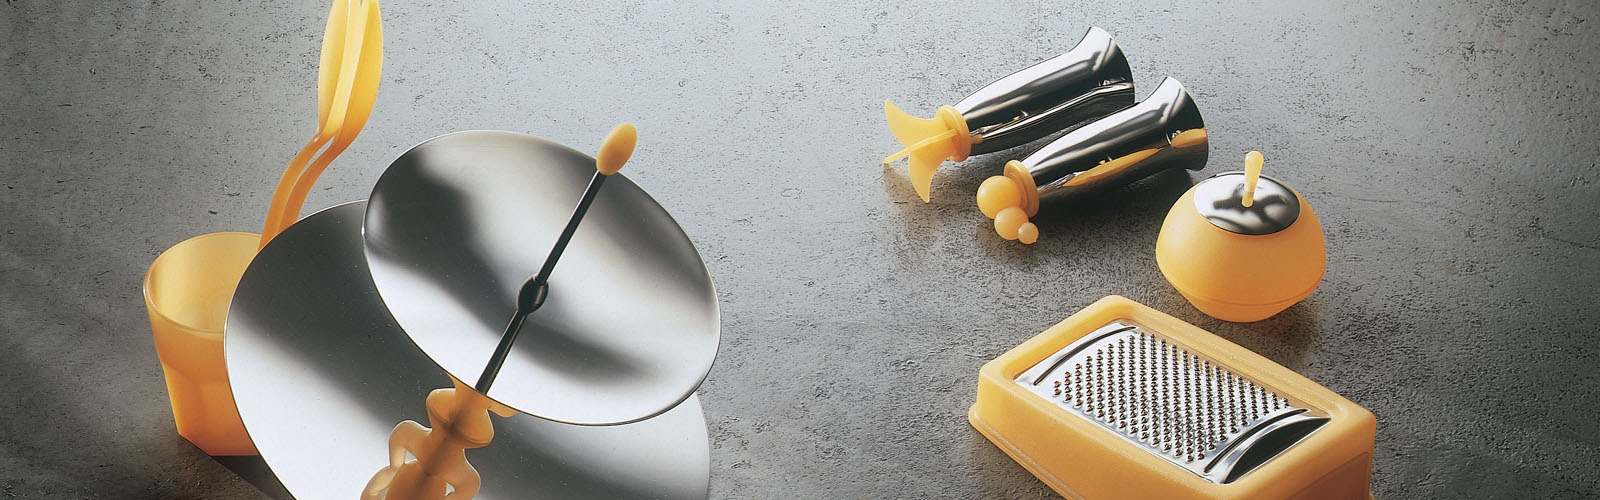 posate forchette coltelli posateria set posate confezione regalo posate casalinghi brescia lumezzane lombardia italia mepra spa